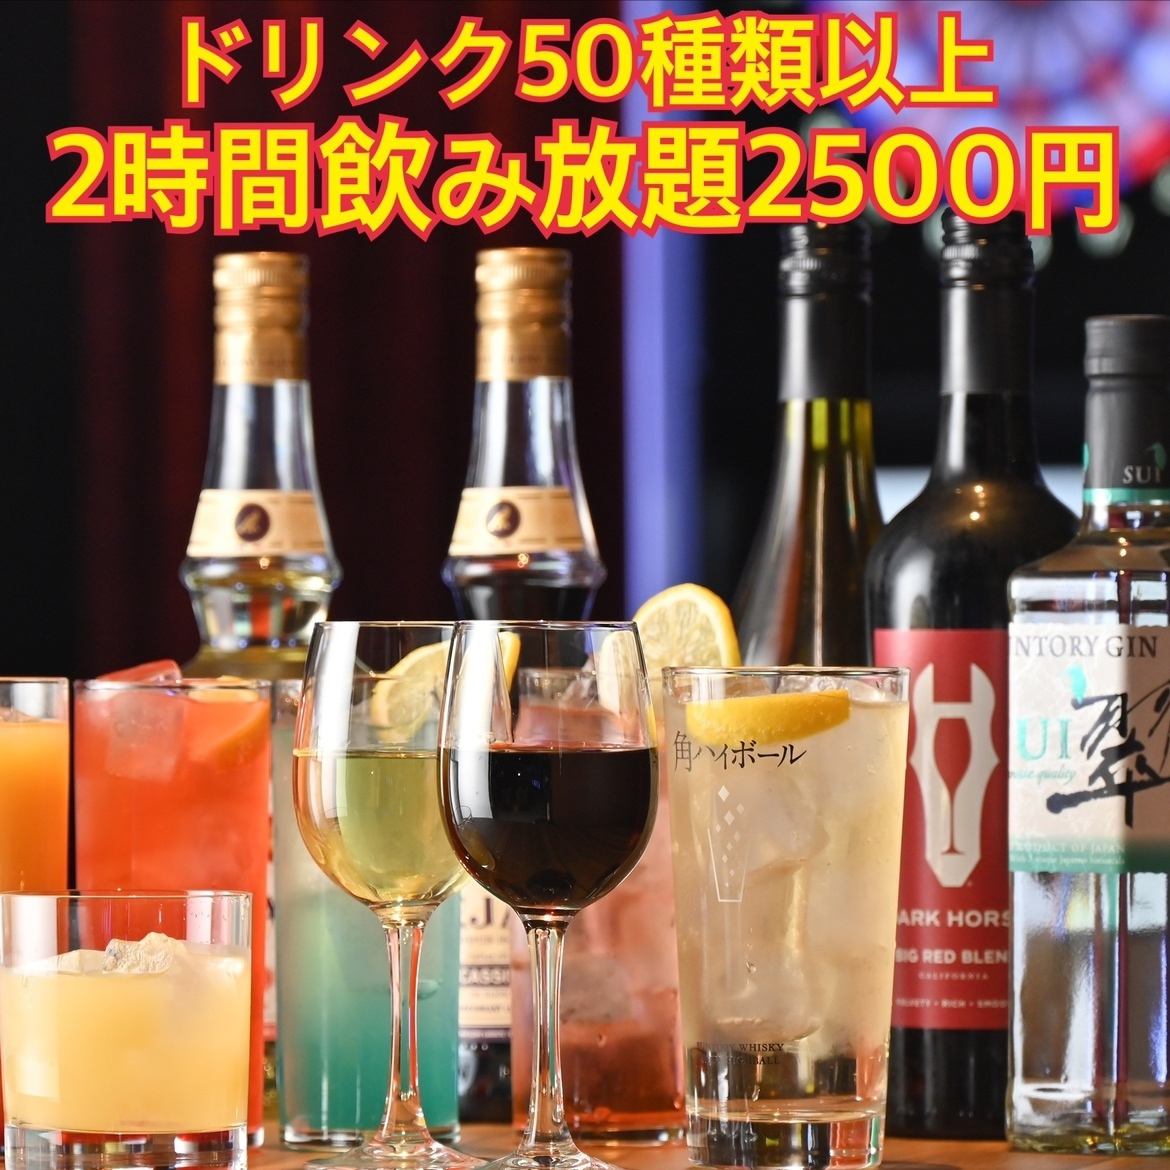 2 시간 음료 무제한 2500 엔에서 ★ 2 차회, 3 차회에 이용하십시오!